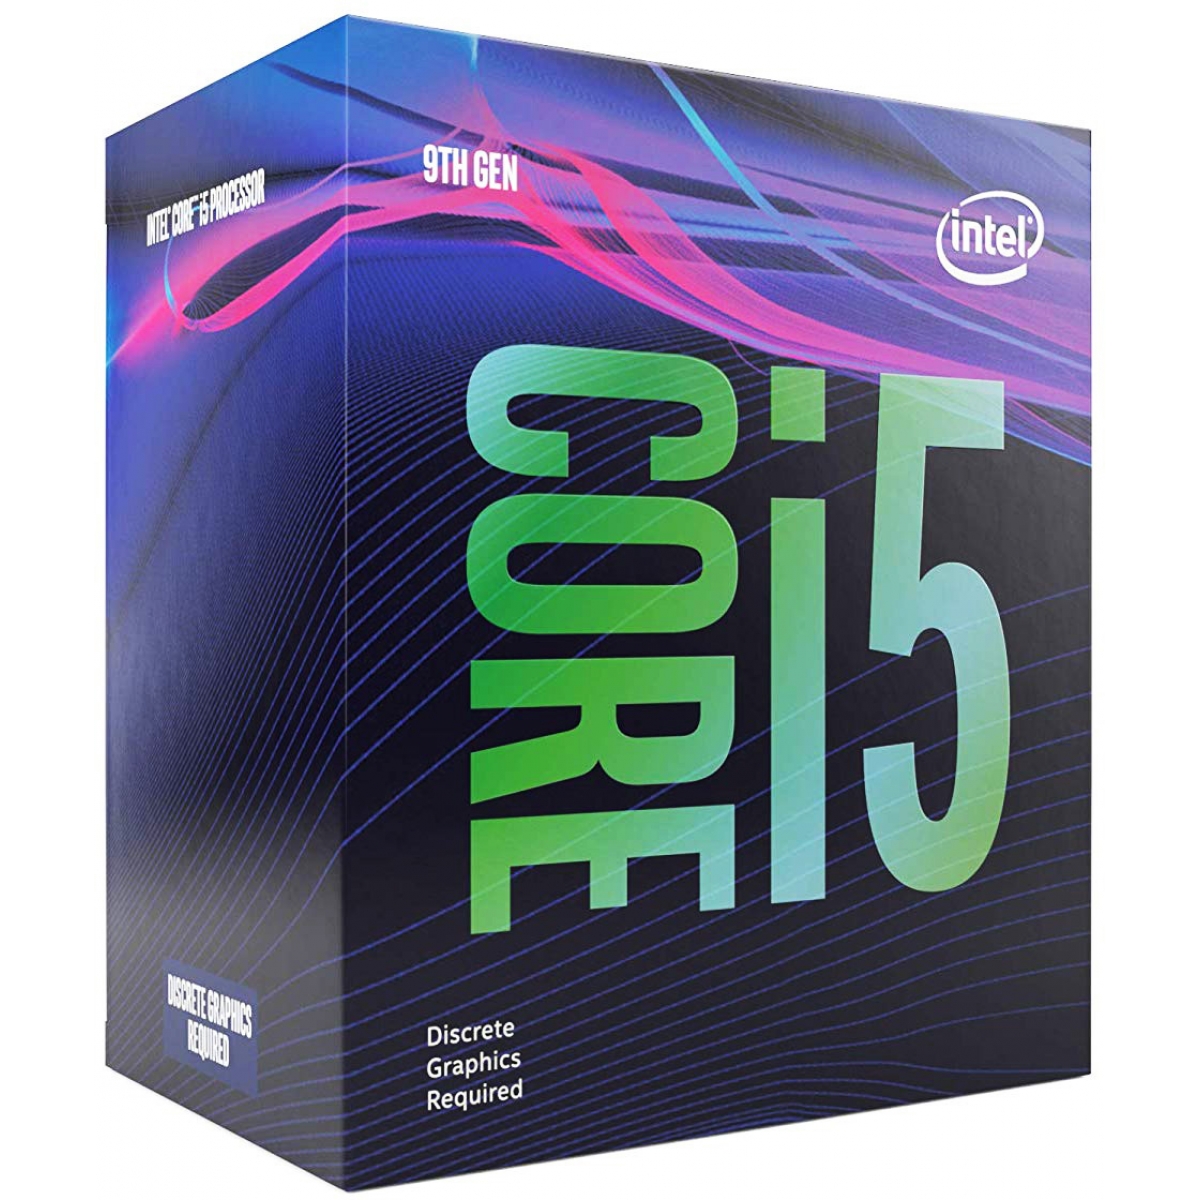 Processador Intel Core i5 9400F 2.90GHz (4.10GHz Turbo), 9ª Geração, 6-Core 6-Thread, LGA 1151, BX80684I59400F